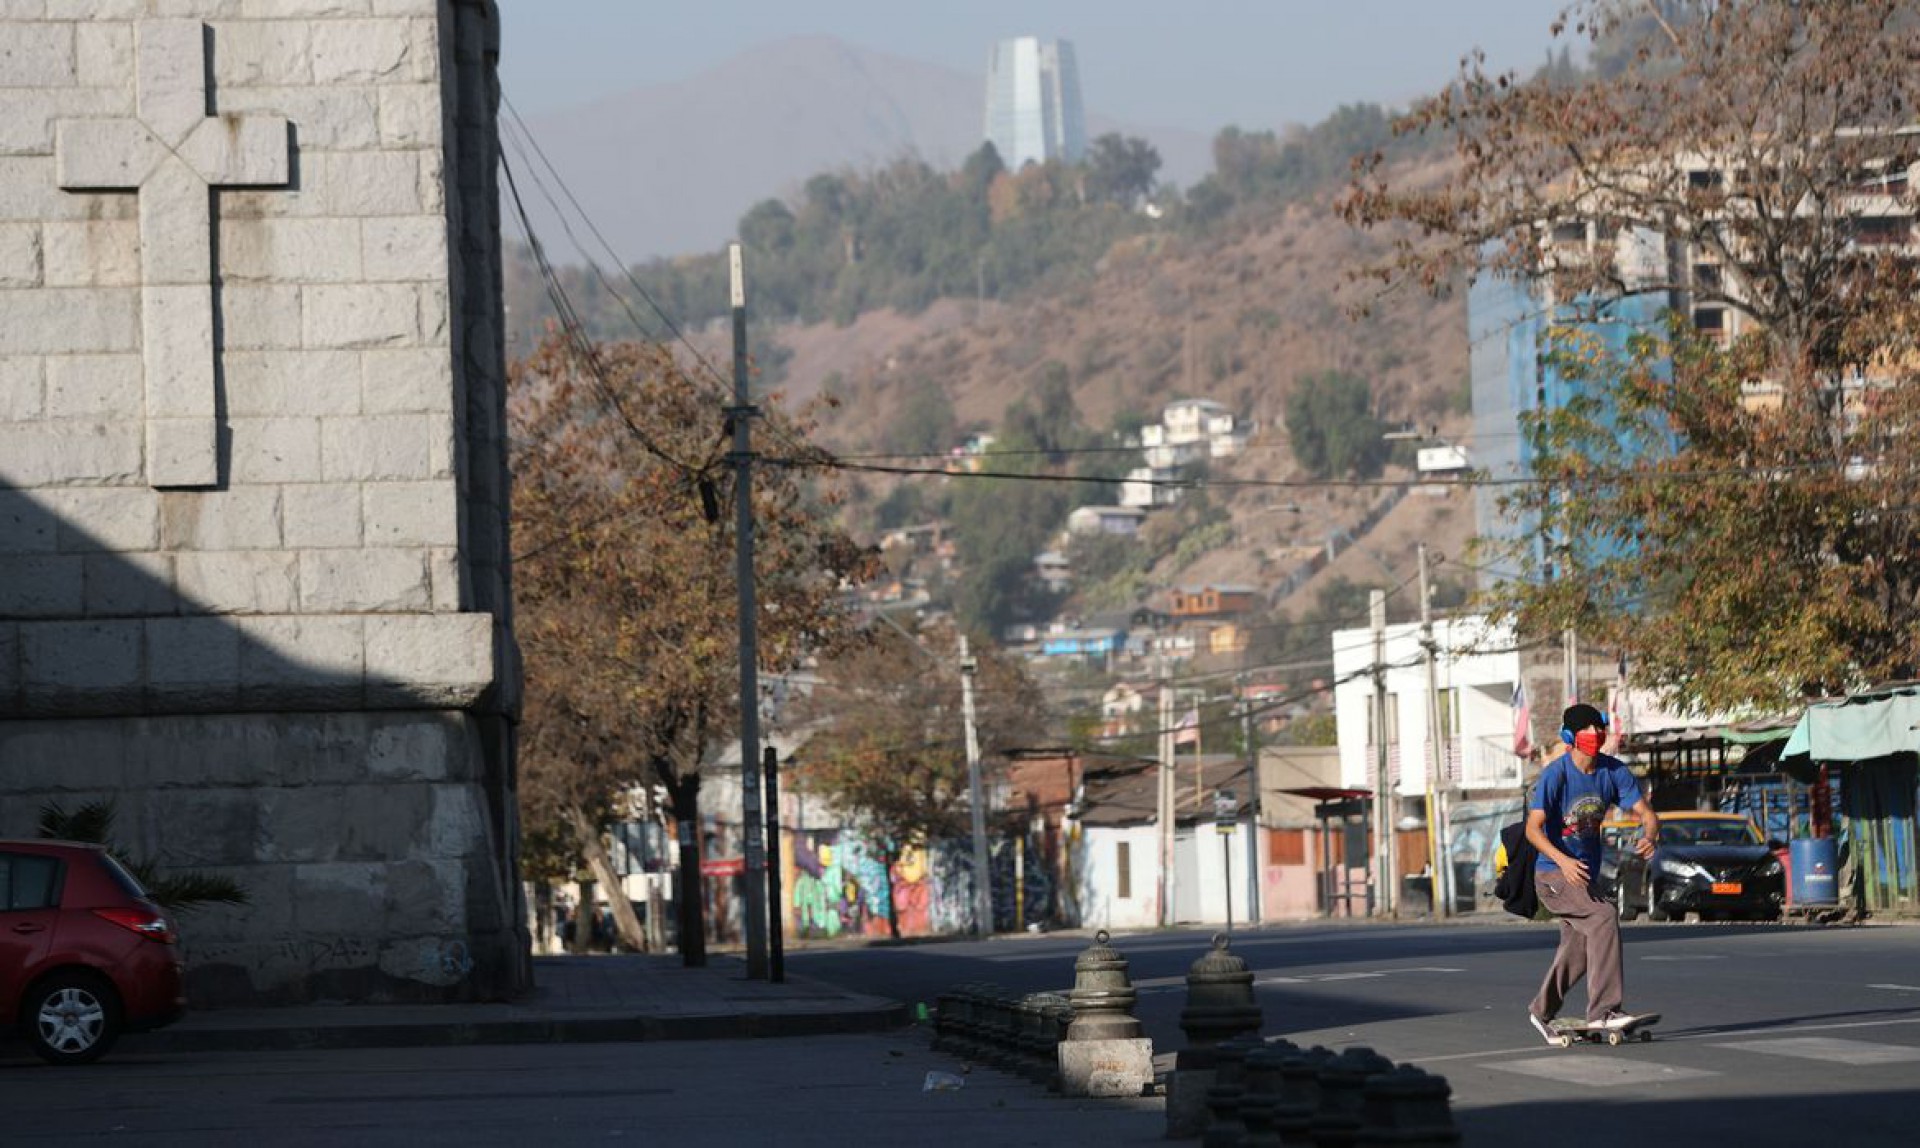 Chile chega a 1 milhão de casos de covid-19 e fecha fronteiras